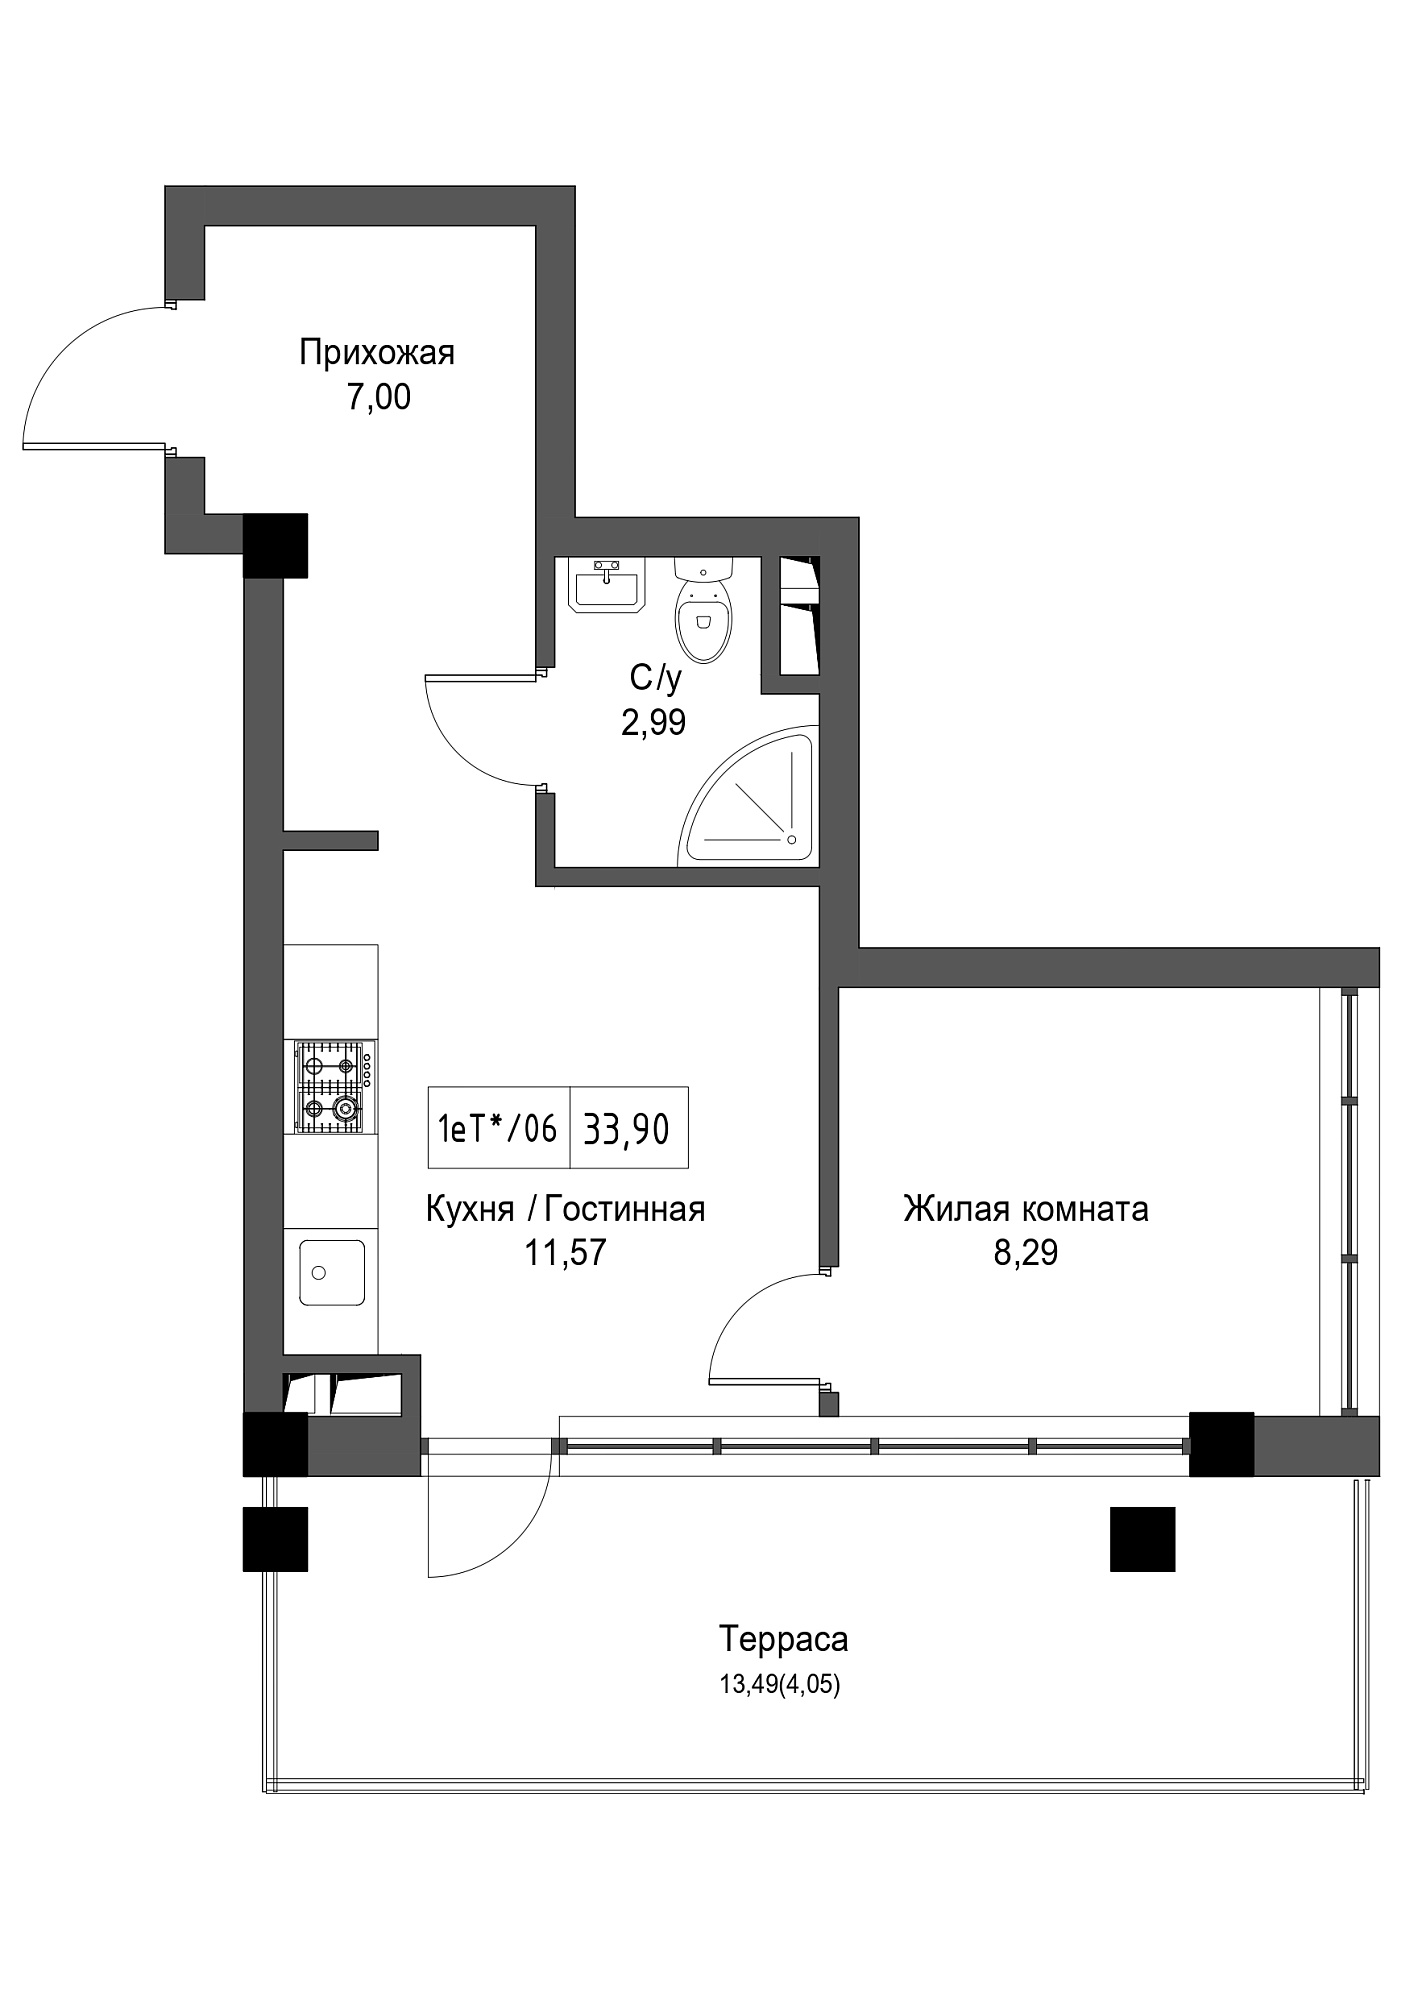 Планировка 1-к квартира площей 33.9м2, UM-002-02/0093.